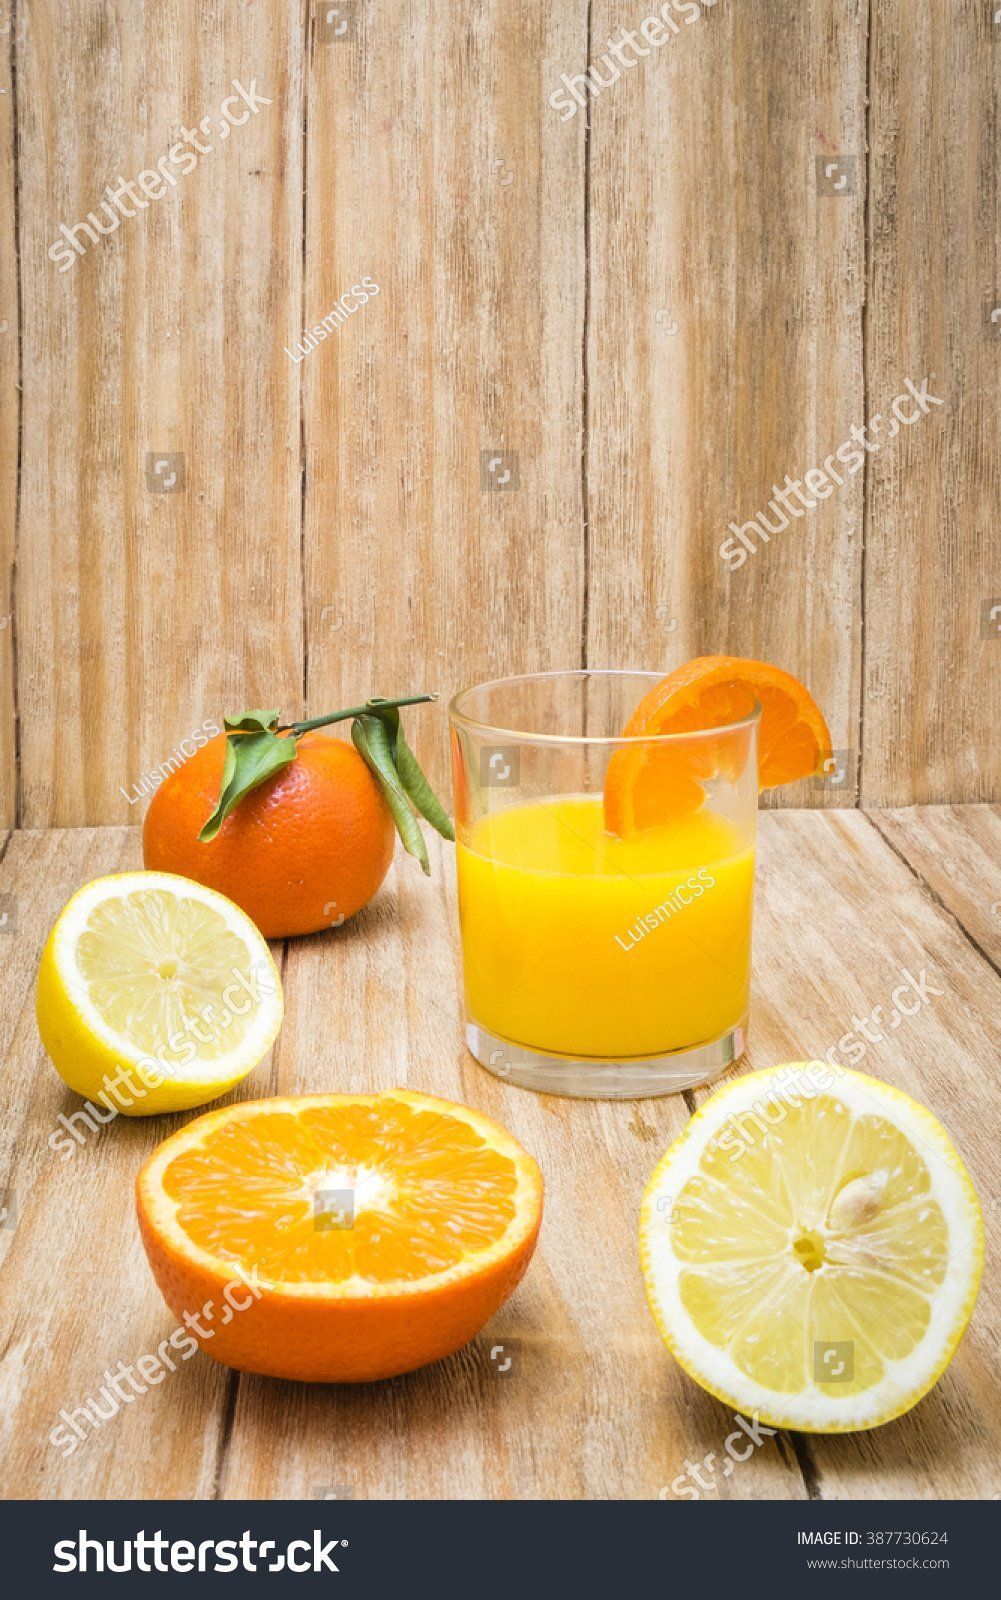 Mature and citrus